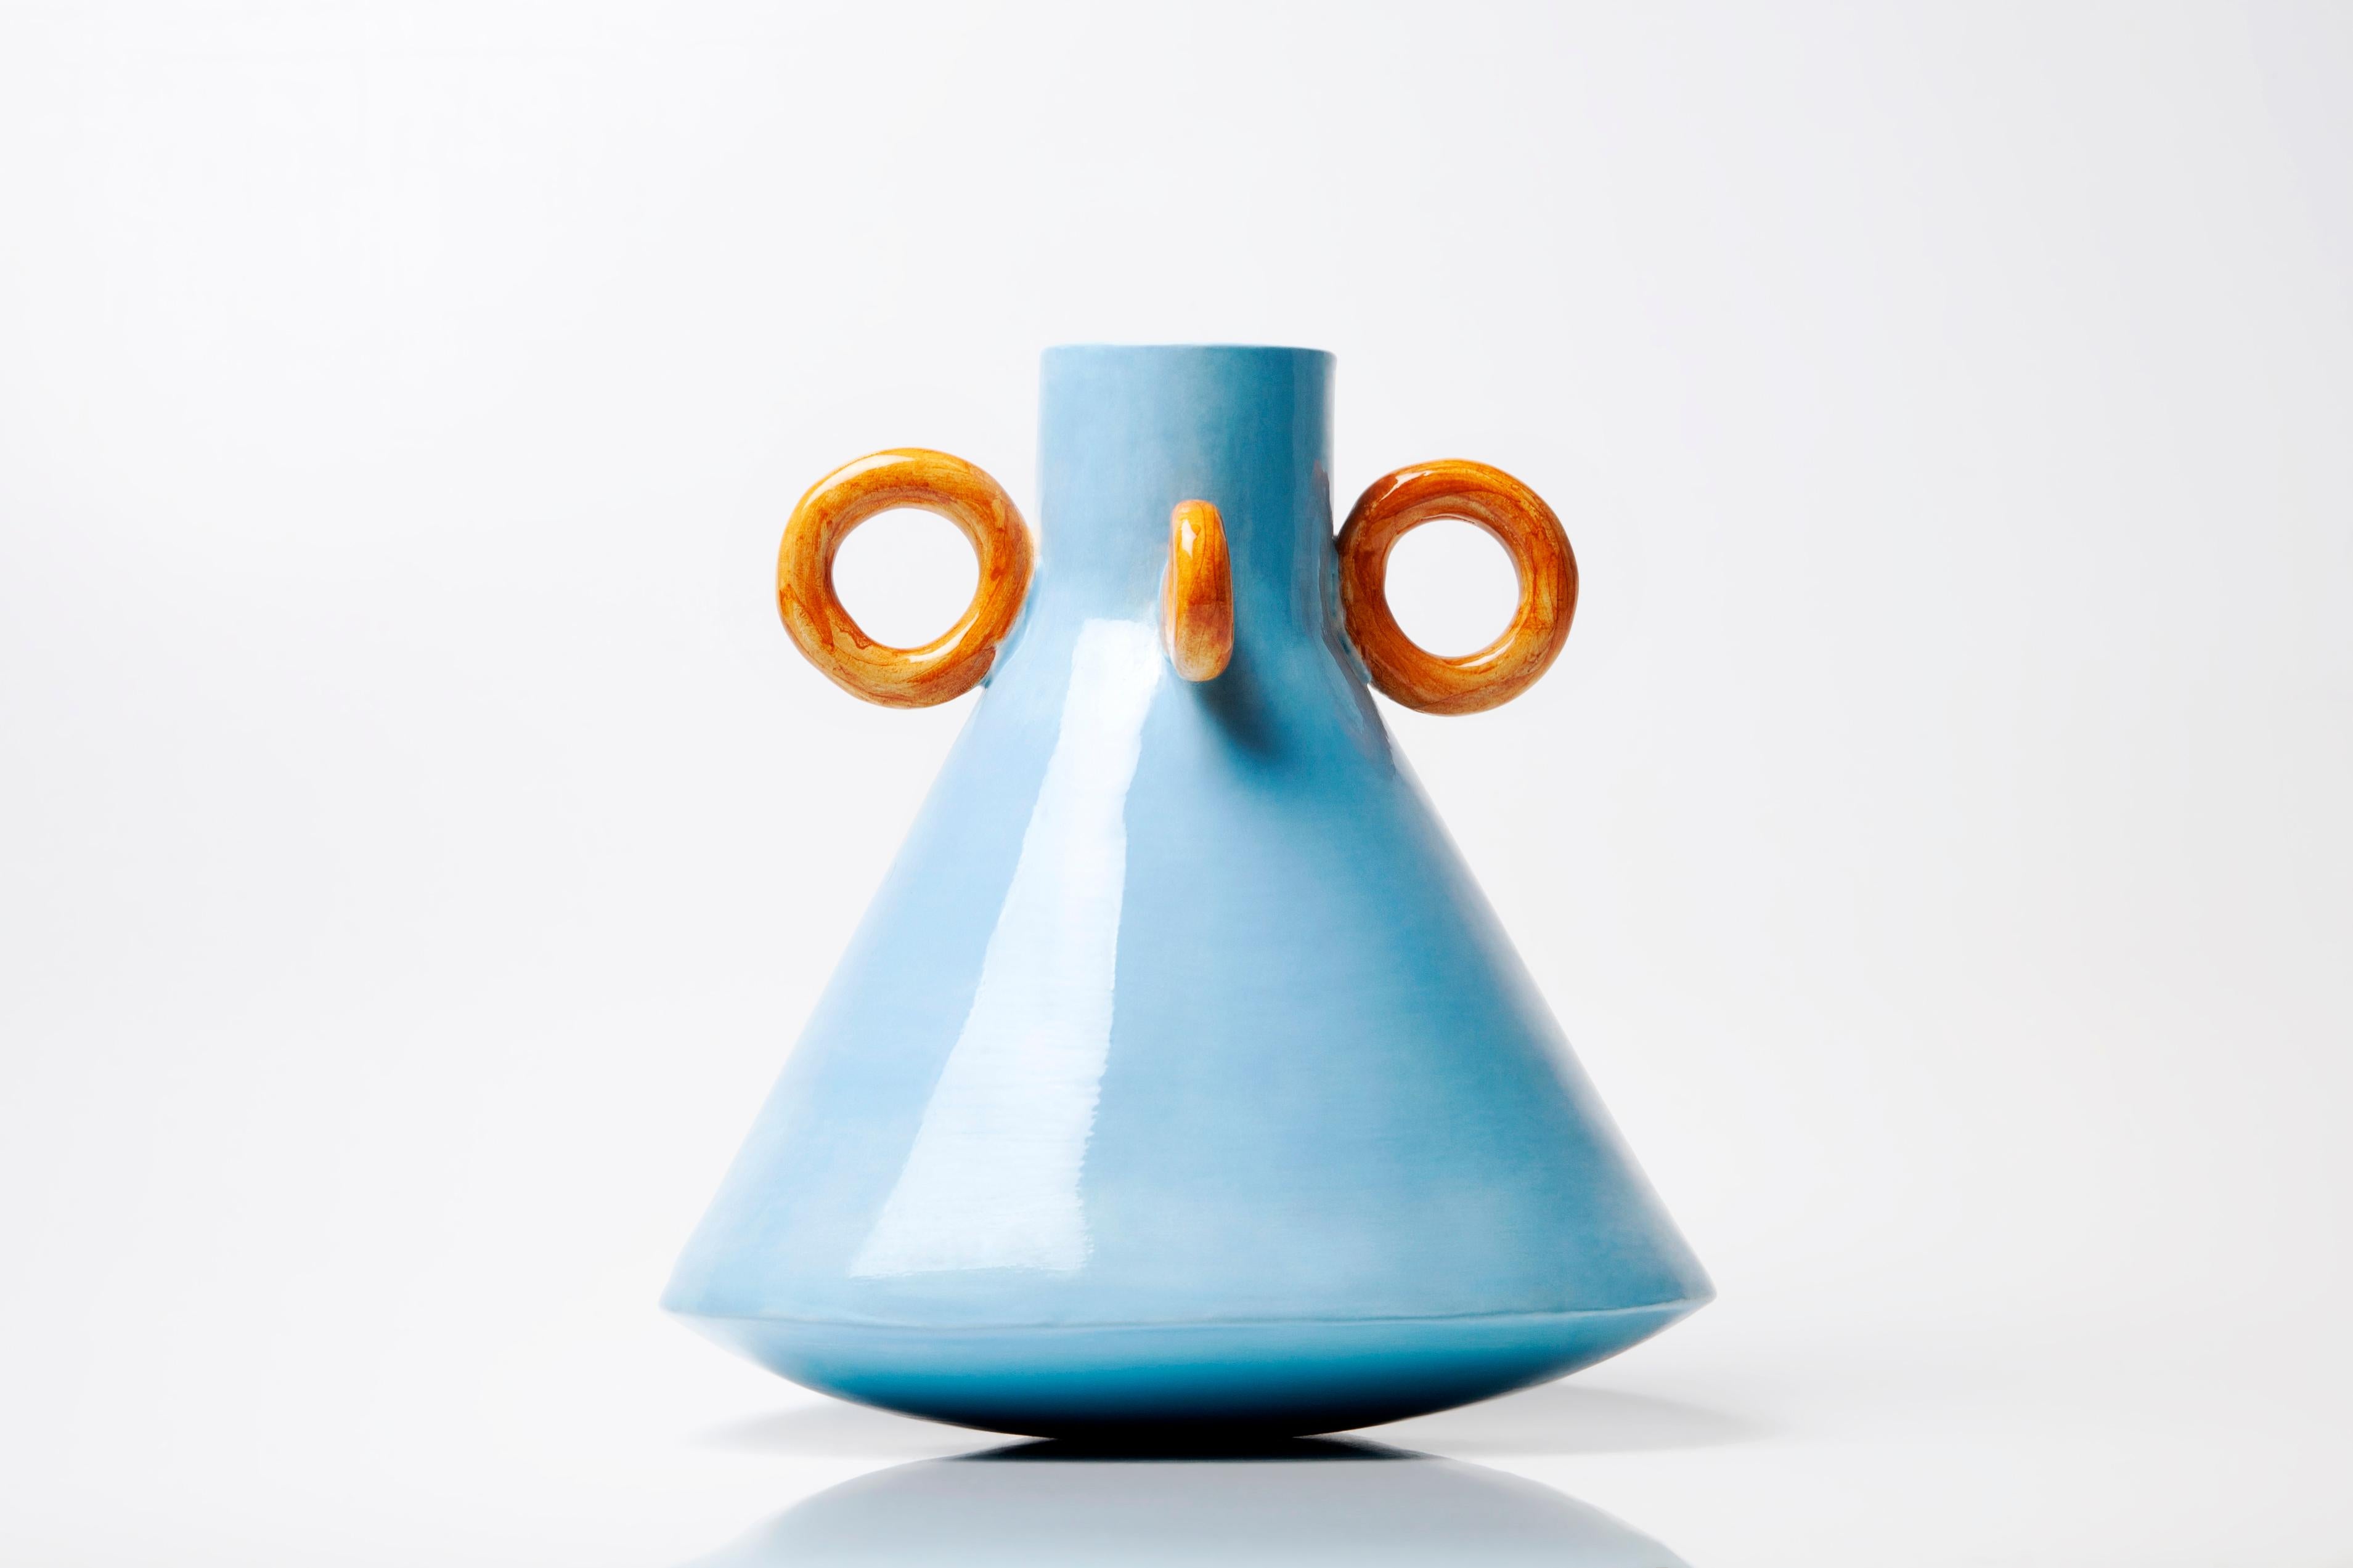 Ramina-Vase von Arianna De Luca
Abmessungen: Höhe 20 x Durchmesser 20 cm 
MATERIALIEN: Keramik 

Ramina ist Teil der Serie Folcloristica. Eine Kollektion, inspiriert von der Stimmung und dem Lebensstil der süditalienischen Dörfer. Die Vase greift